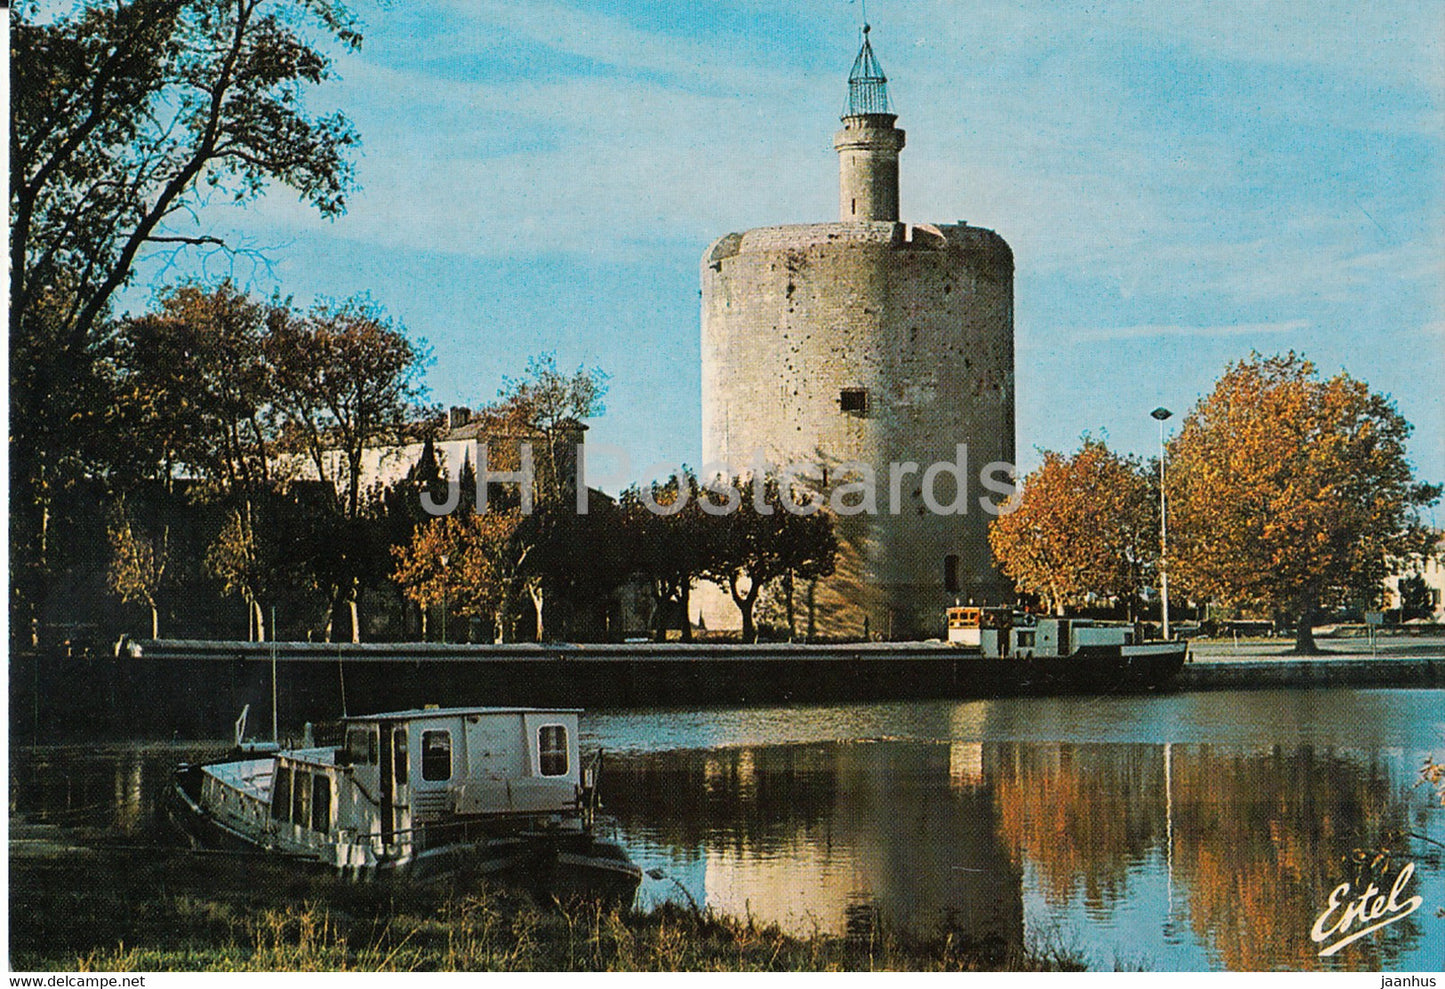 Aigues Mortes - La Tour de Constance - donjon - motor boat - France - unused - JH Postcards